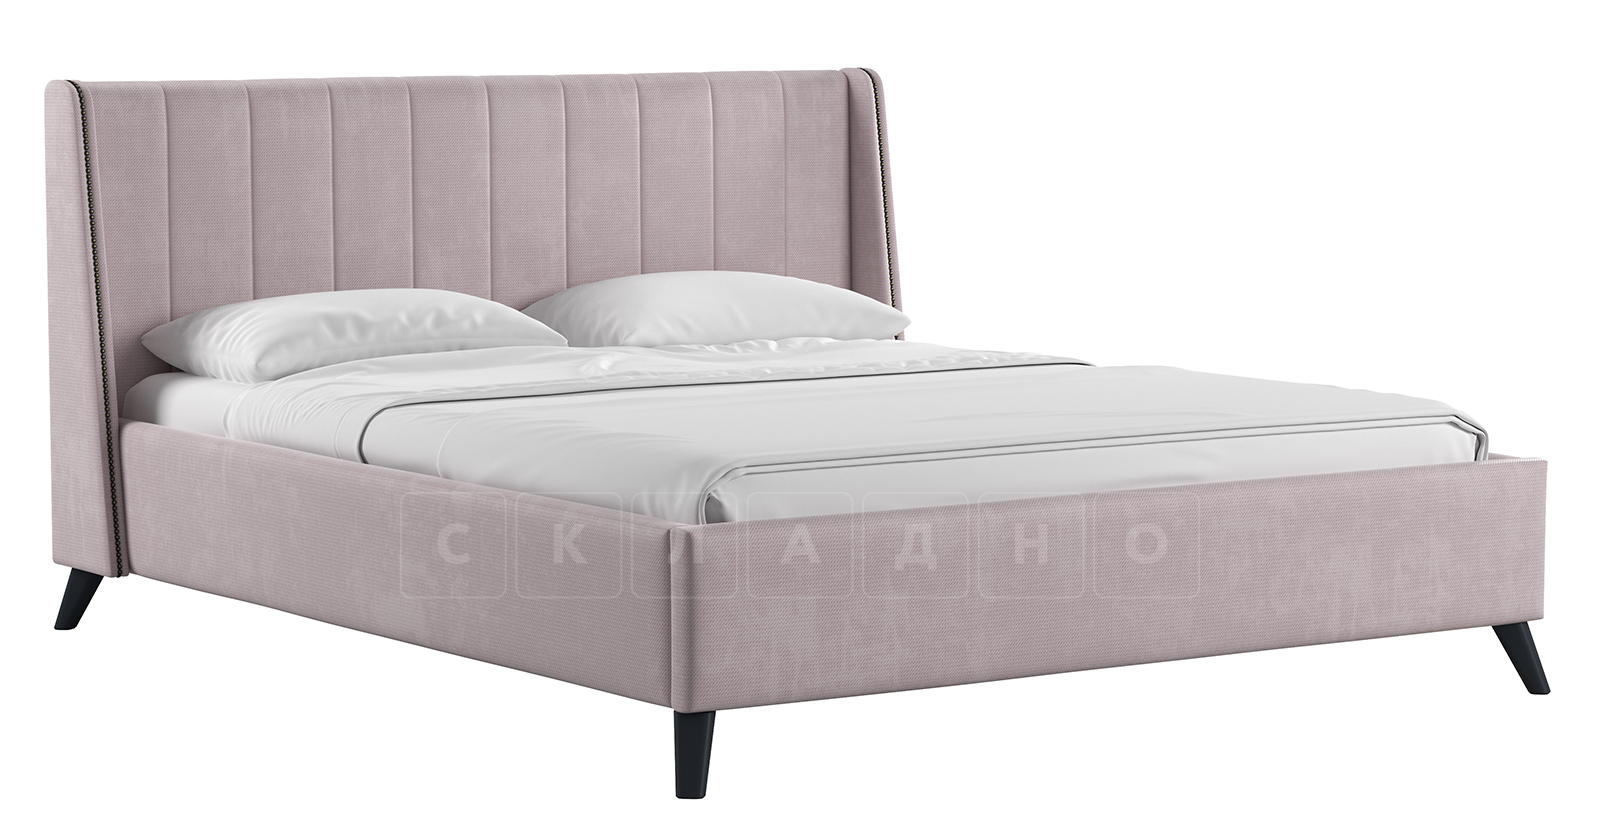 Мягкая кровать Мелисса 160 см велюр ява фото 1 | интернет-магазин Складно